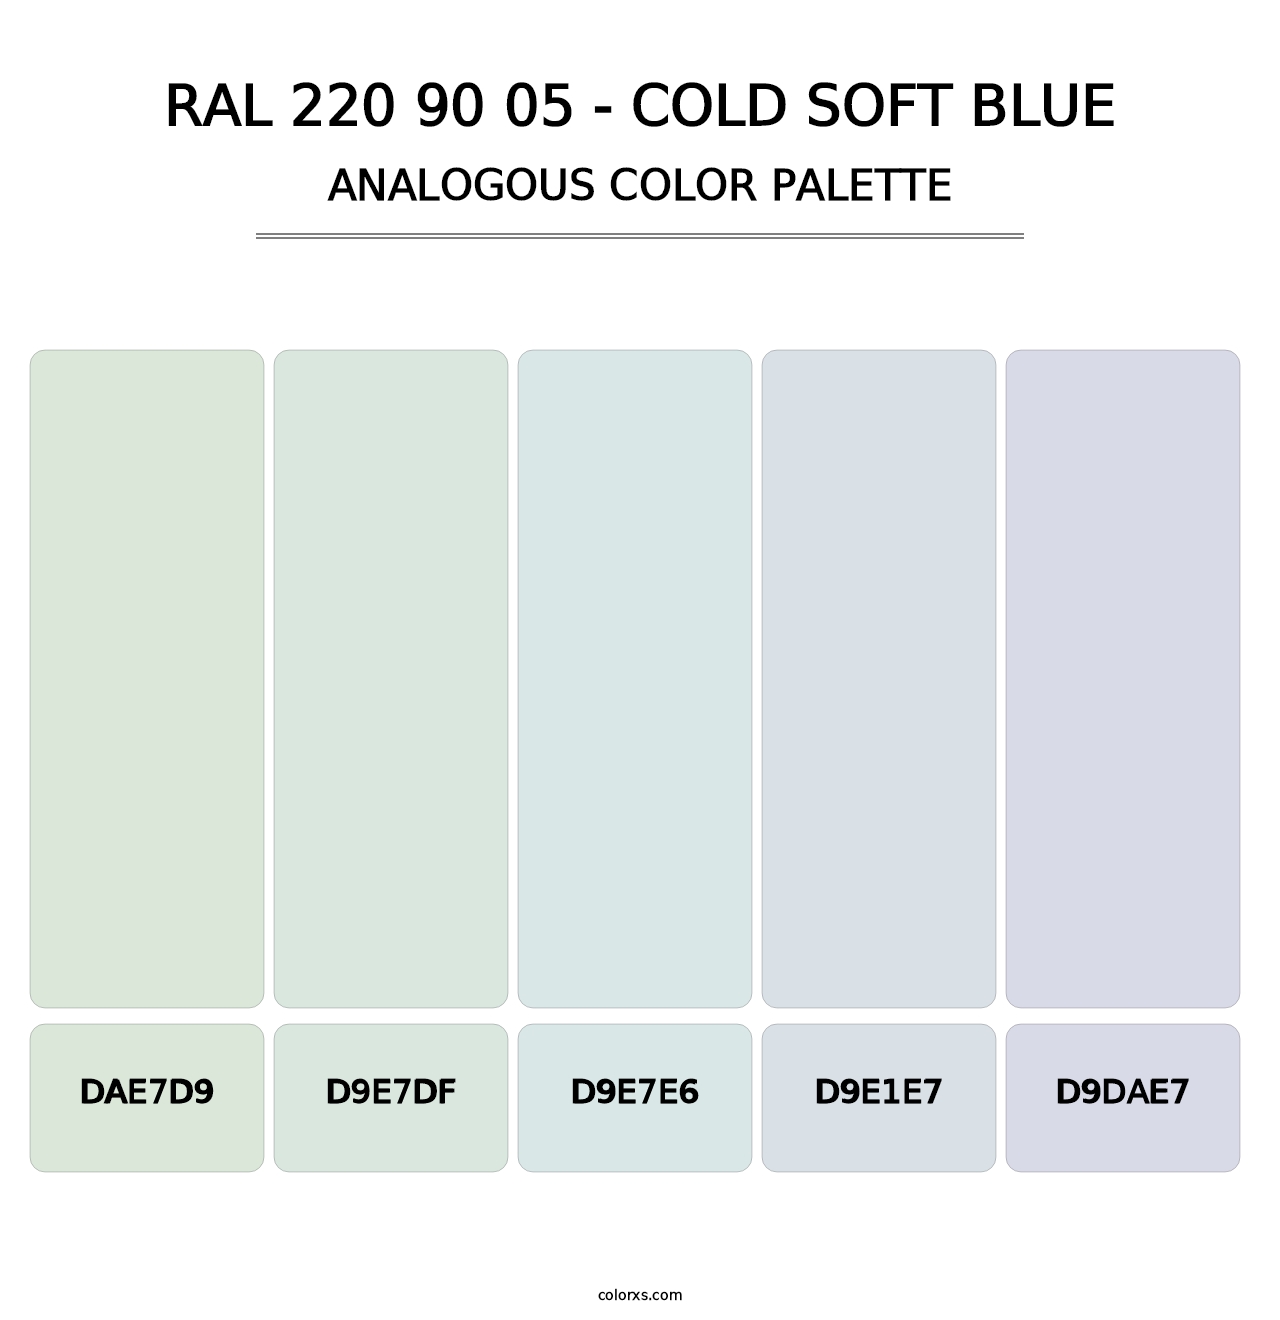 RAL 220 90 05 - Cold Soft Blue - Analogous Color Palette